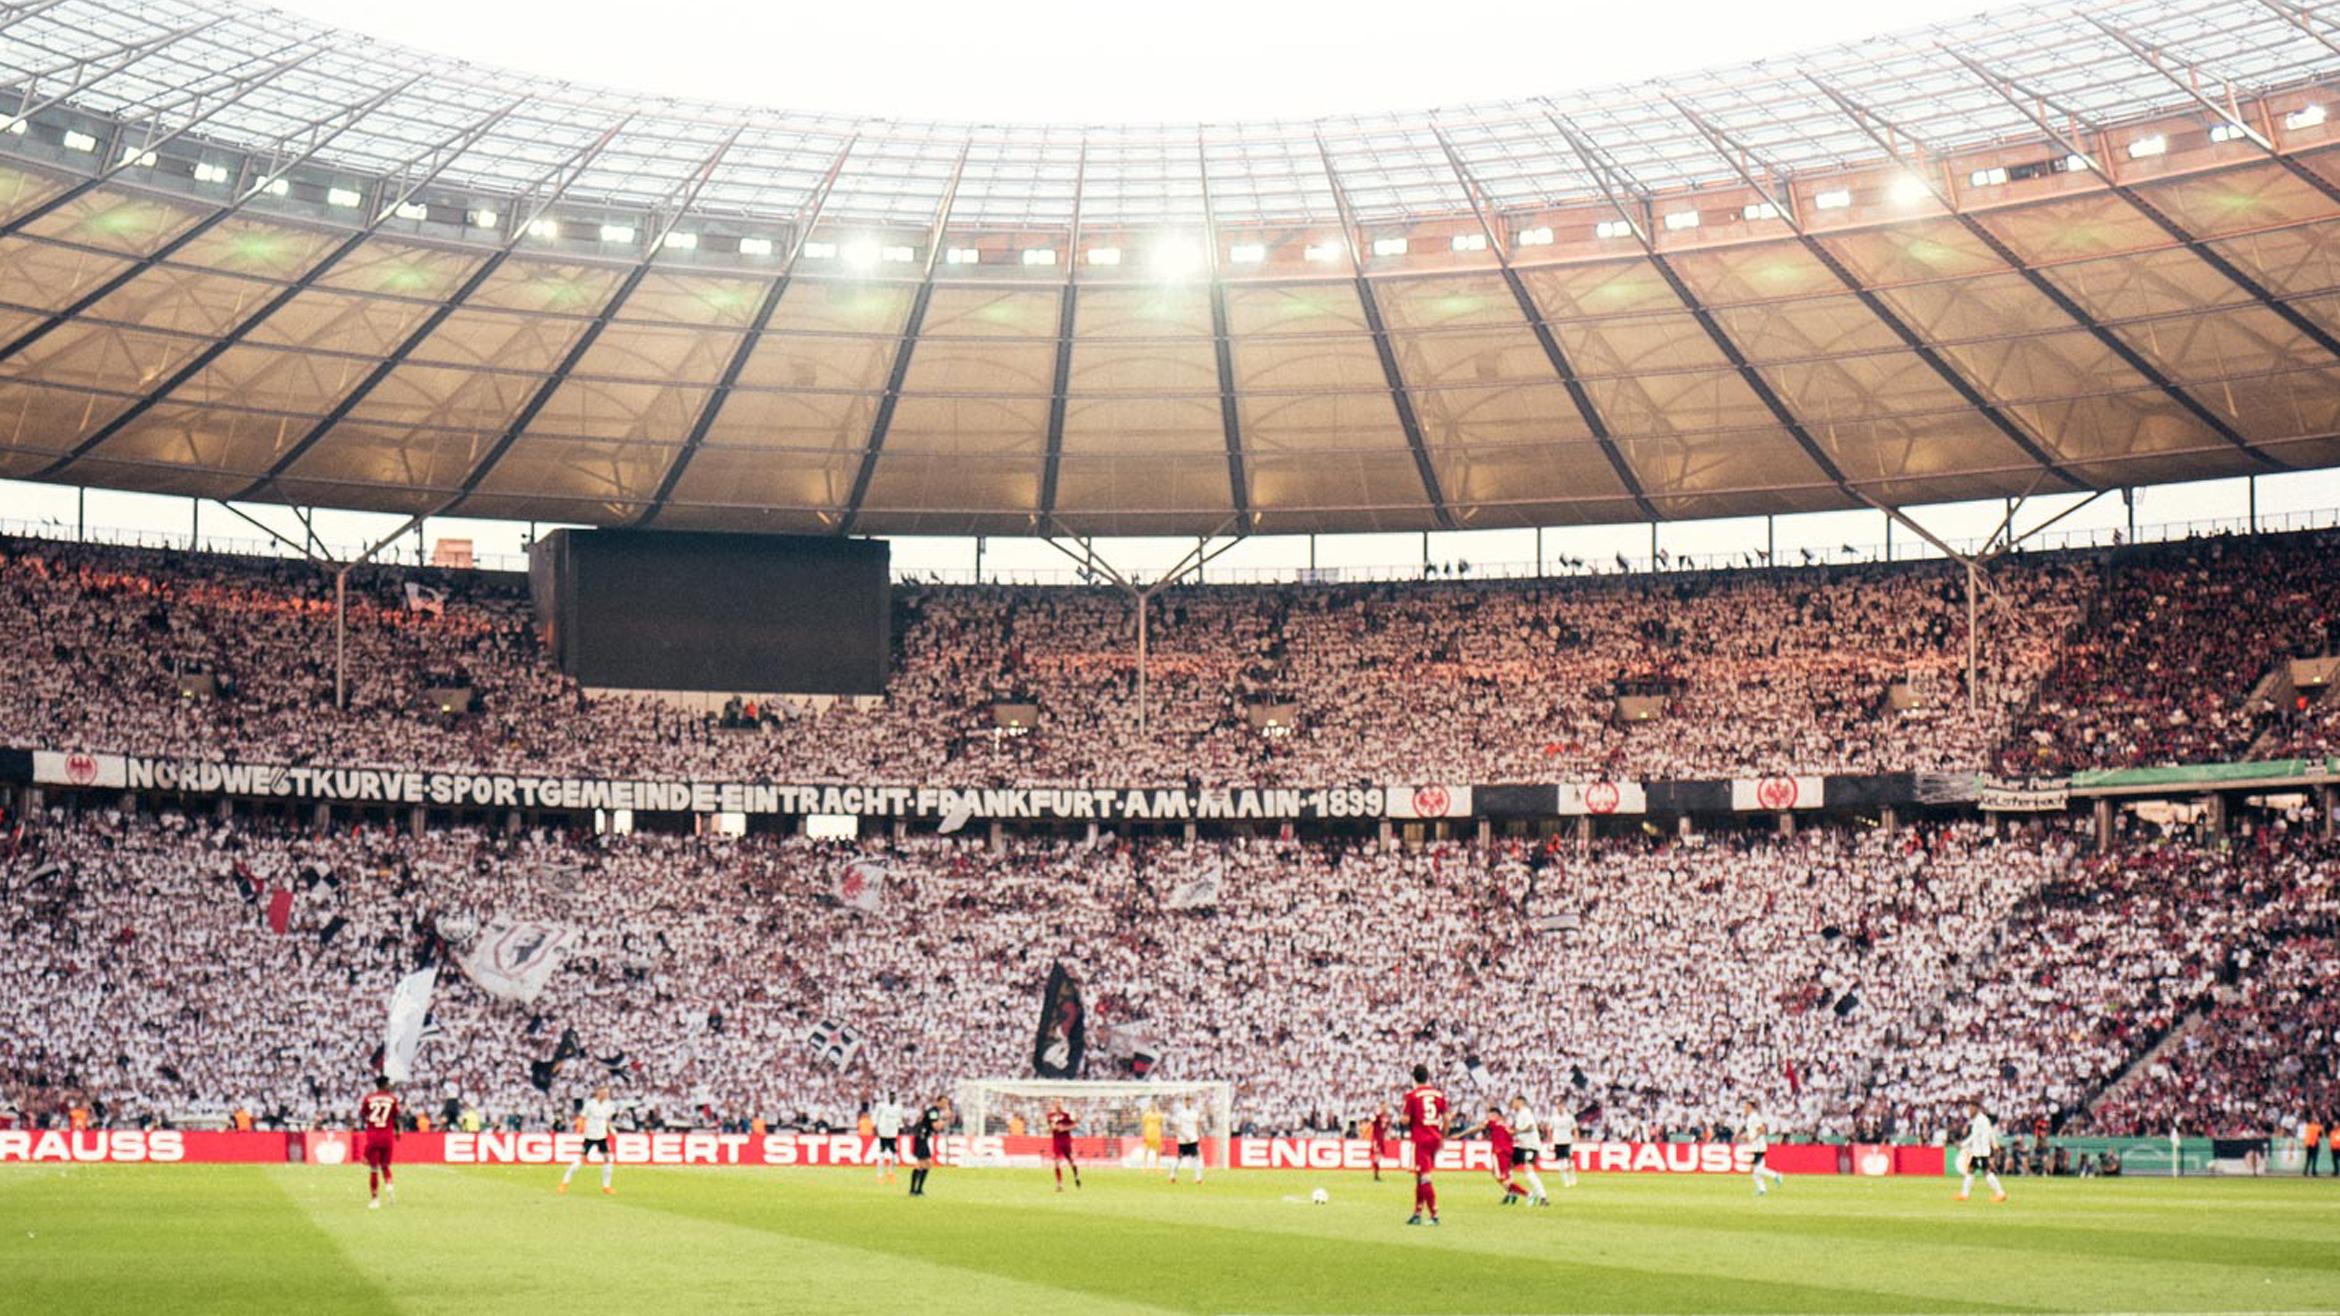 Das neue DFB-Markenbild muss für ein Ticket genau so funktionieren wie für ein Stadion –